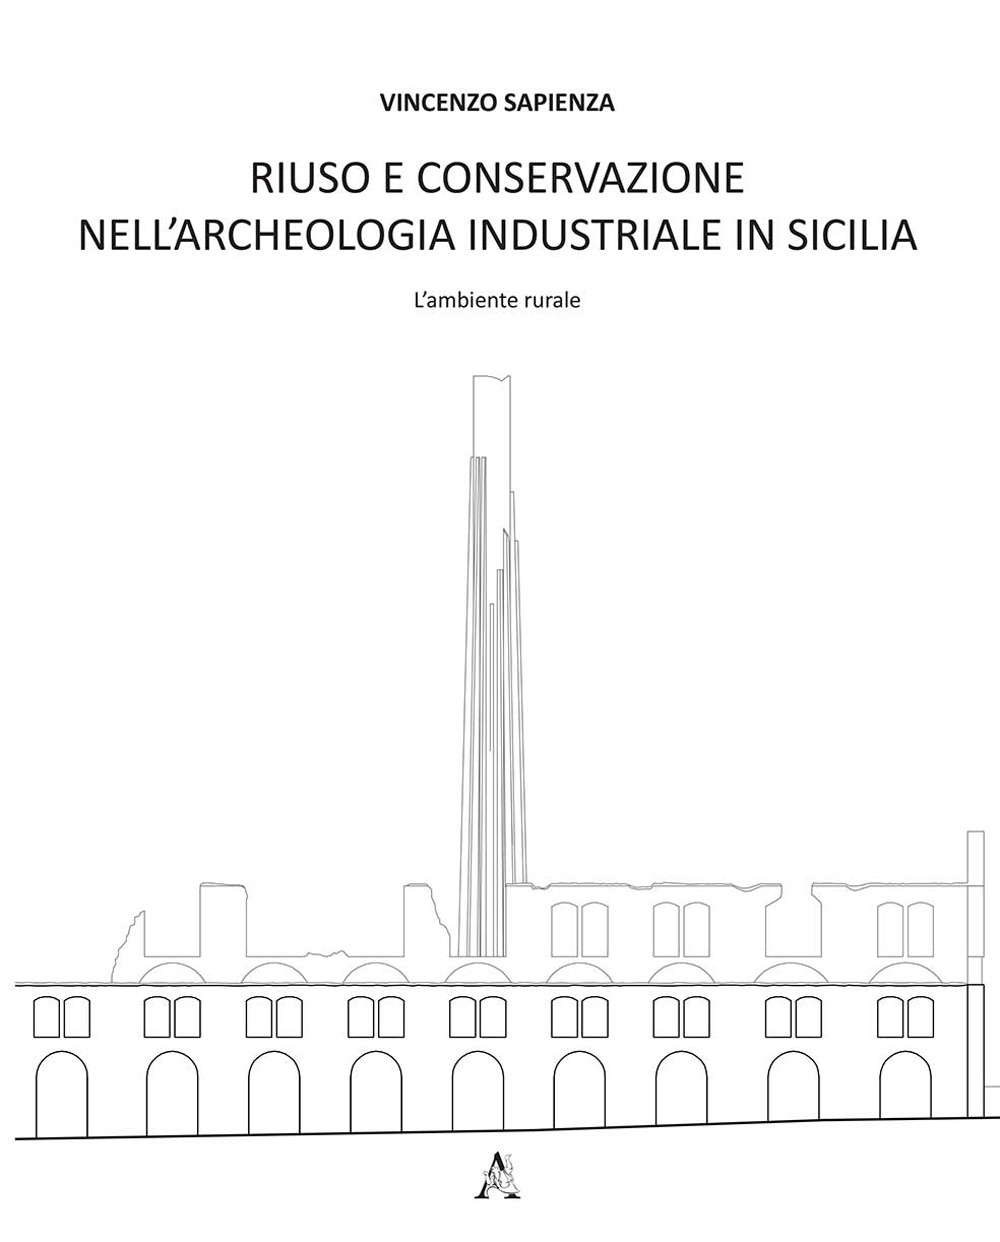 Riuso e conservazione nell'archeologia industriale in Sicilia. L'ambiente rurale